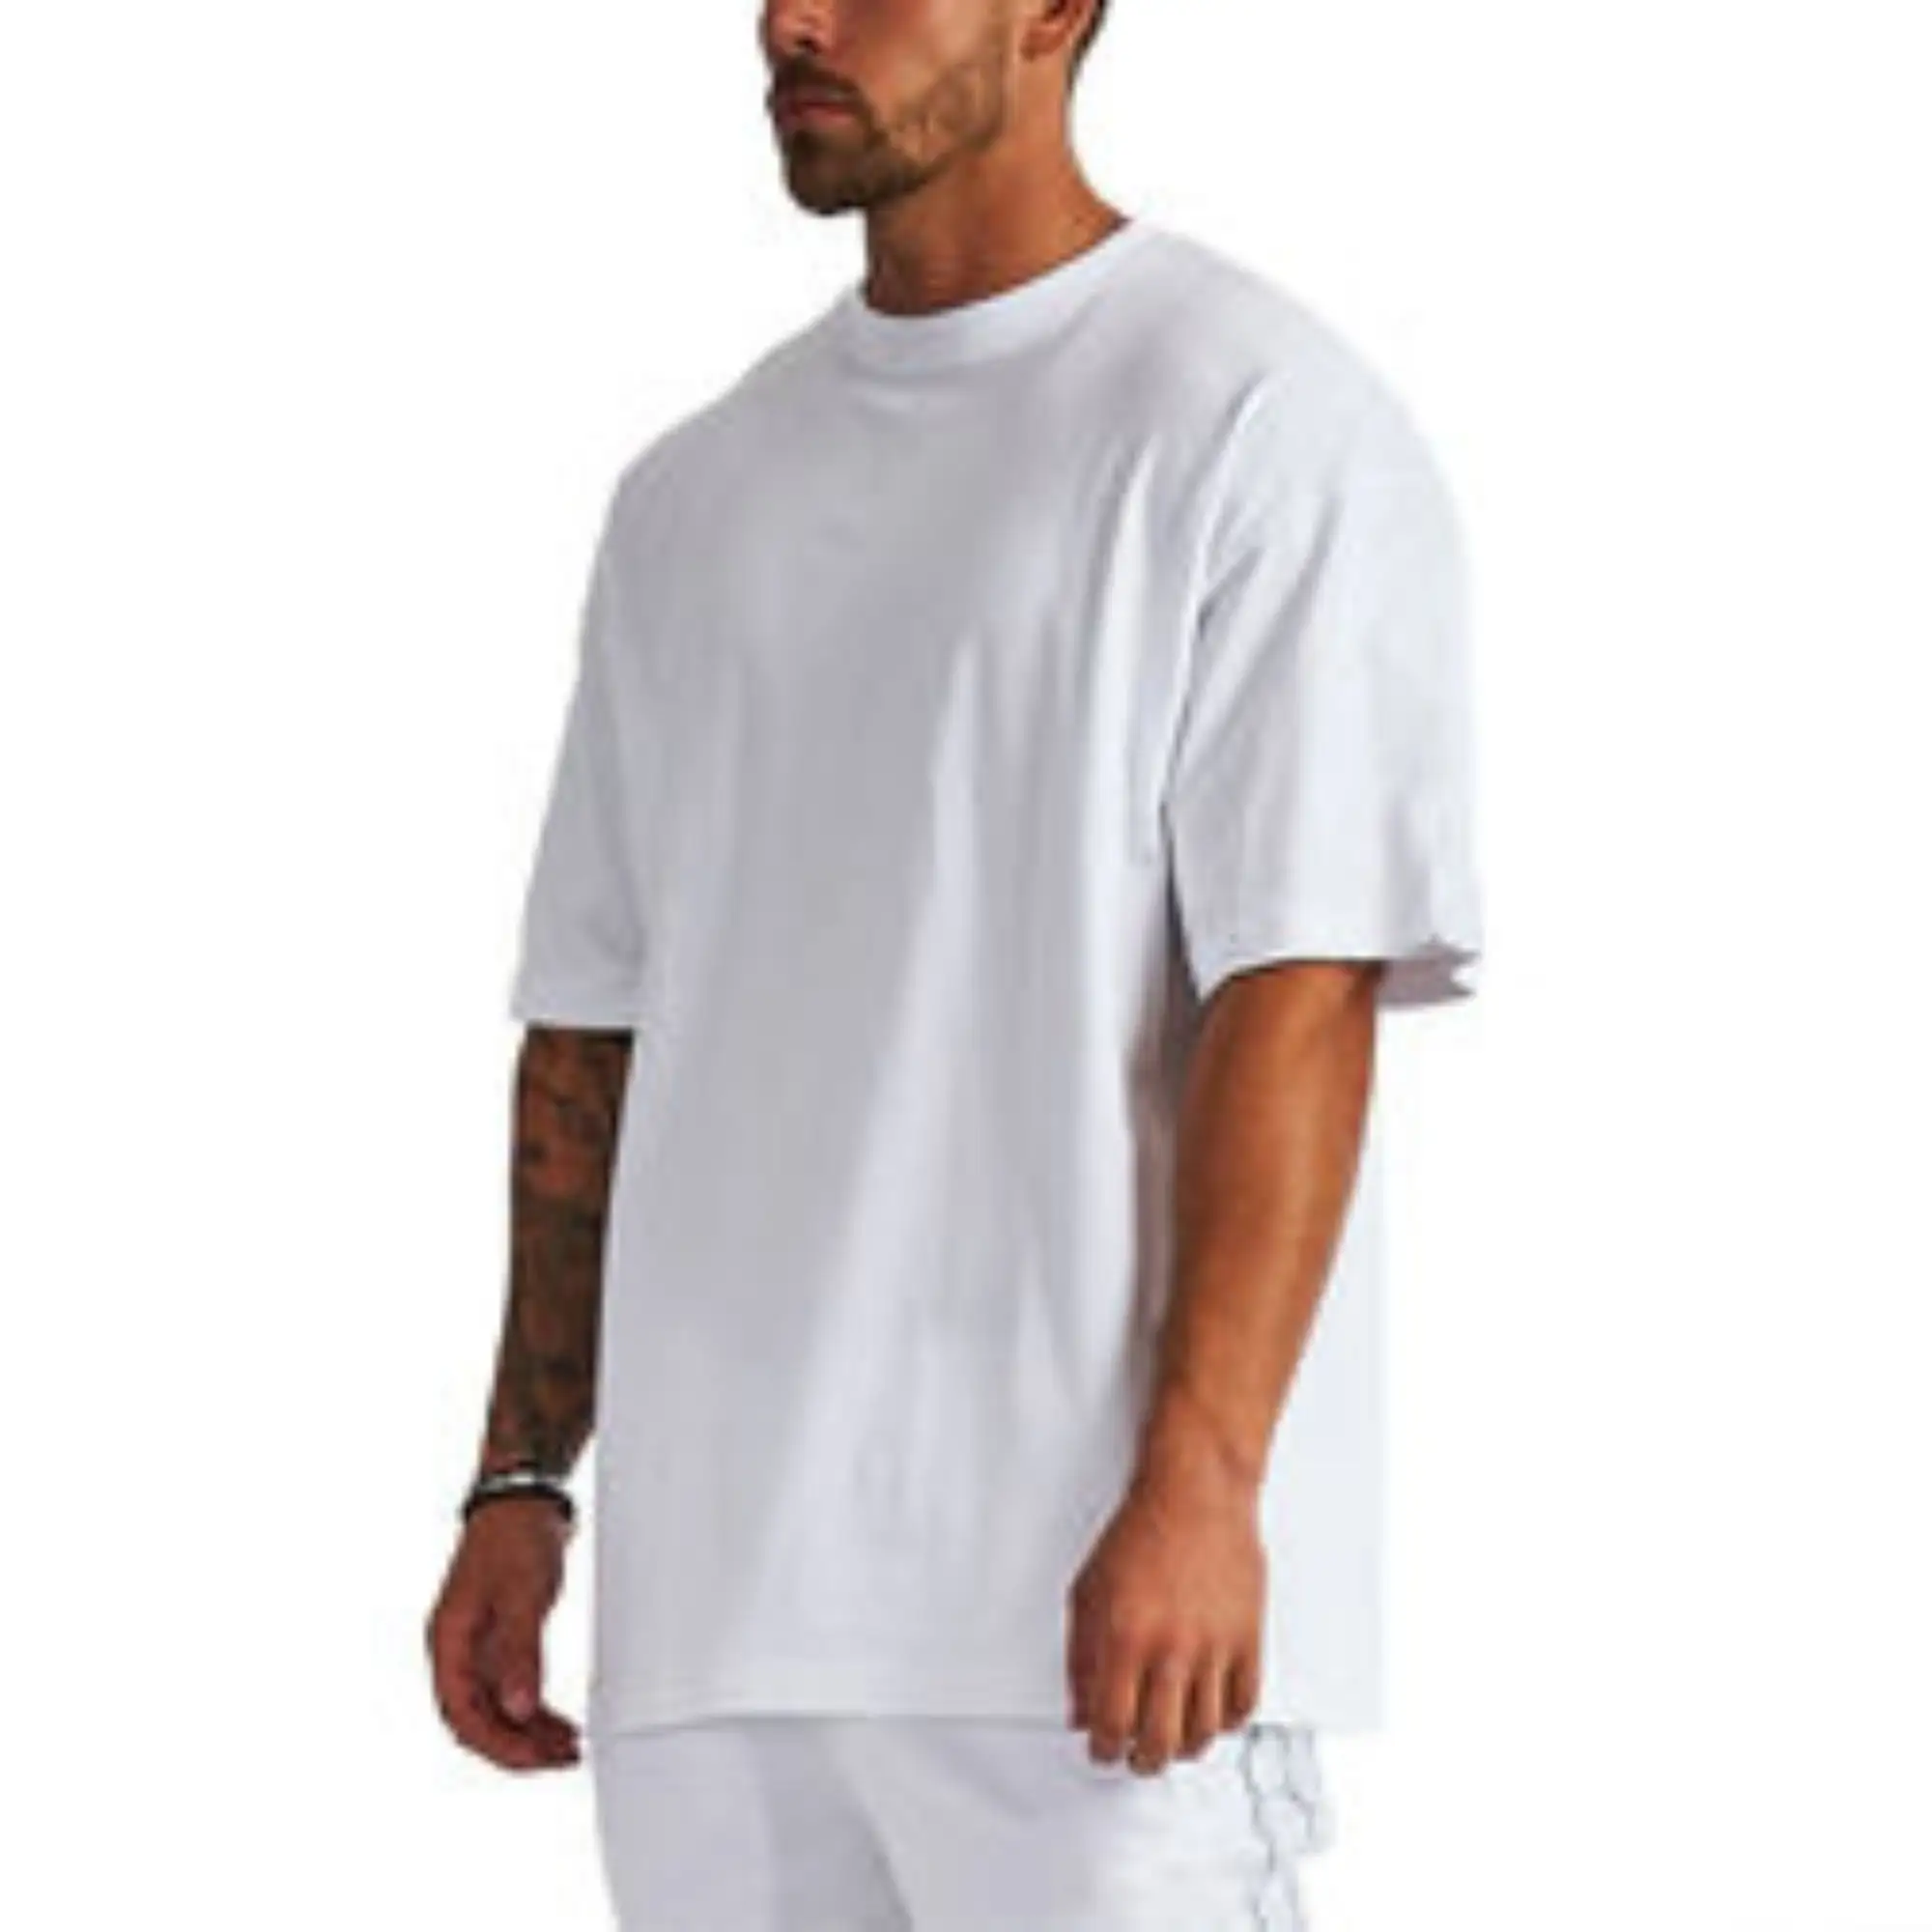 남자 공백 면 tshirt 특대 하락 어깨 디자인 t-셔츠 주문 질 인쇄 t-셔츠